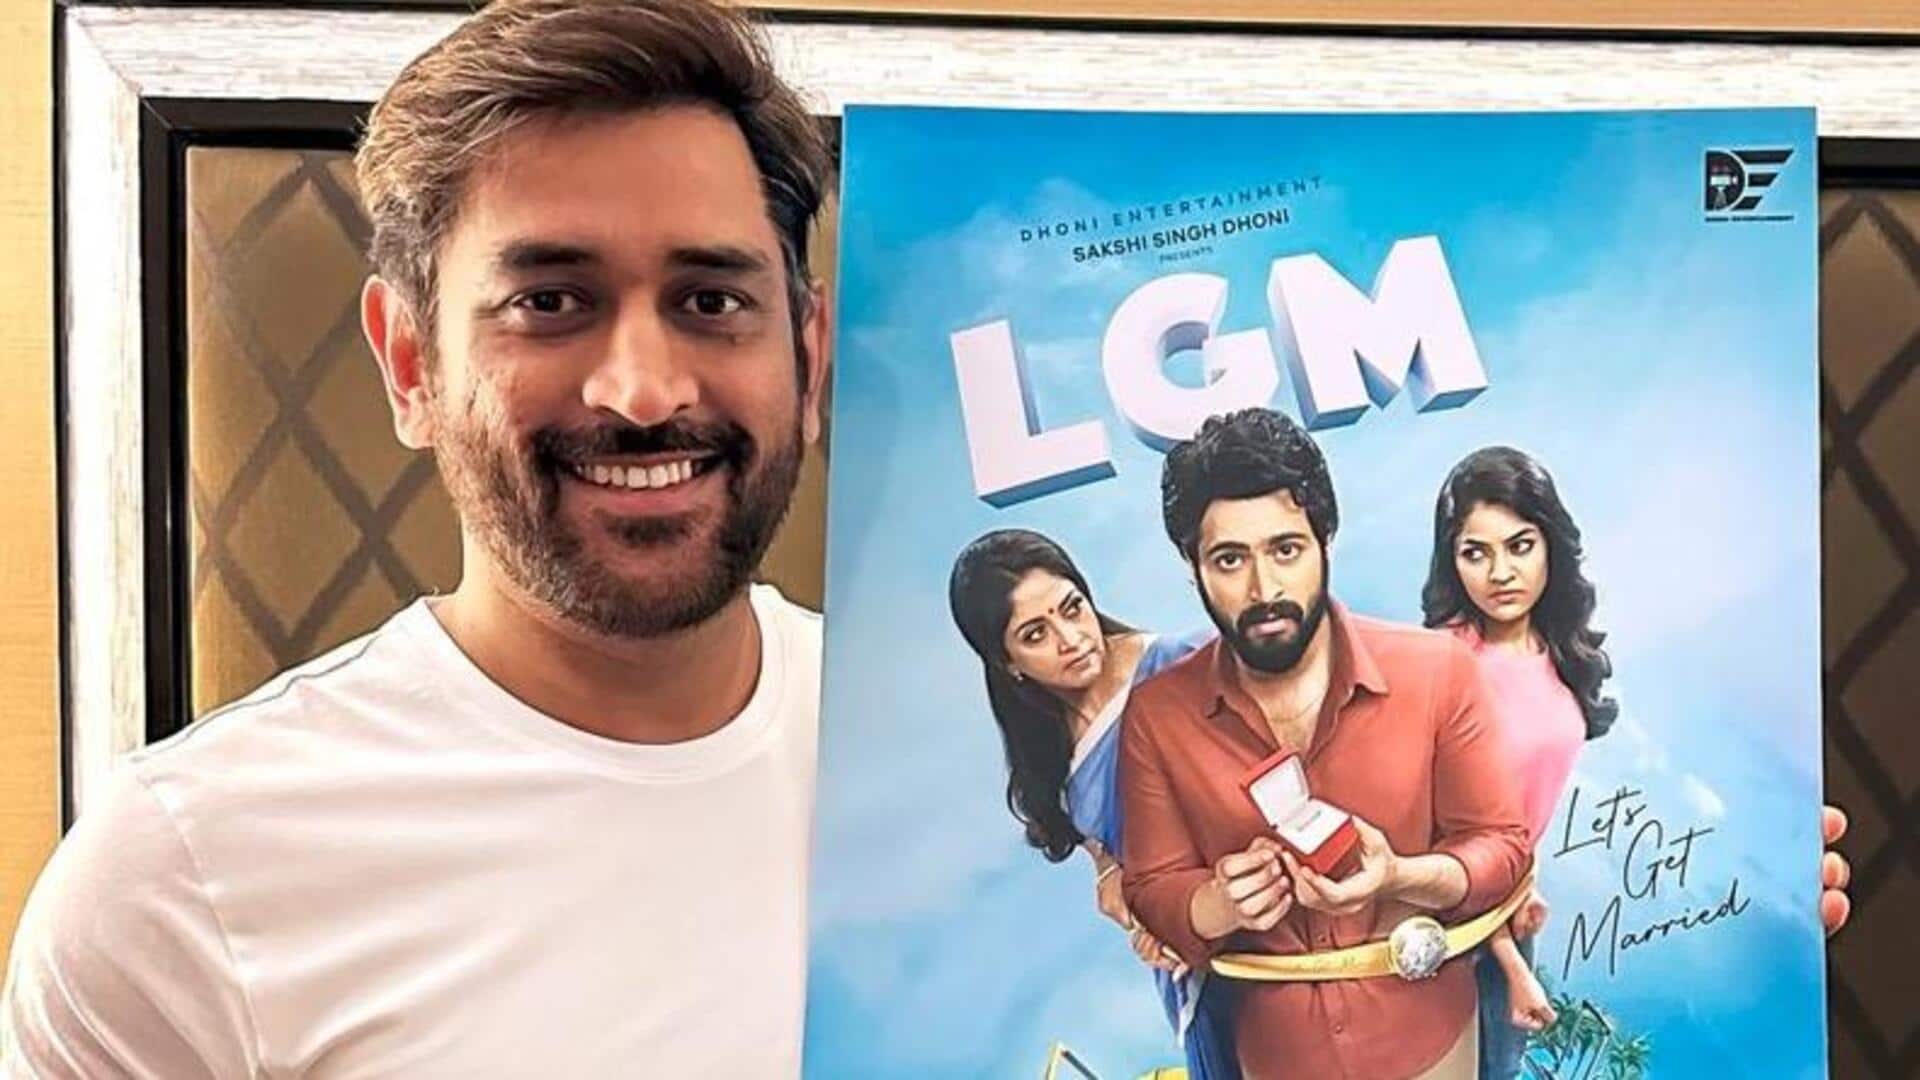 महेंद्र सिंह धोनी के होम प्रोडक्शन की पहली फिल्म 'लेट्स गेट मैरिड' का ट्रेलर रिलीज